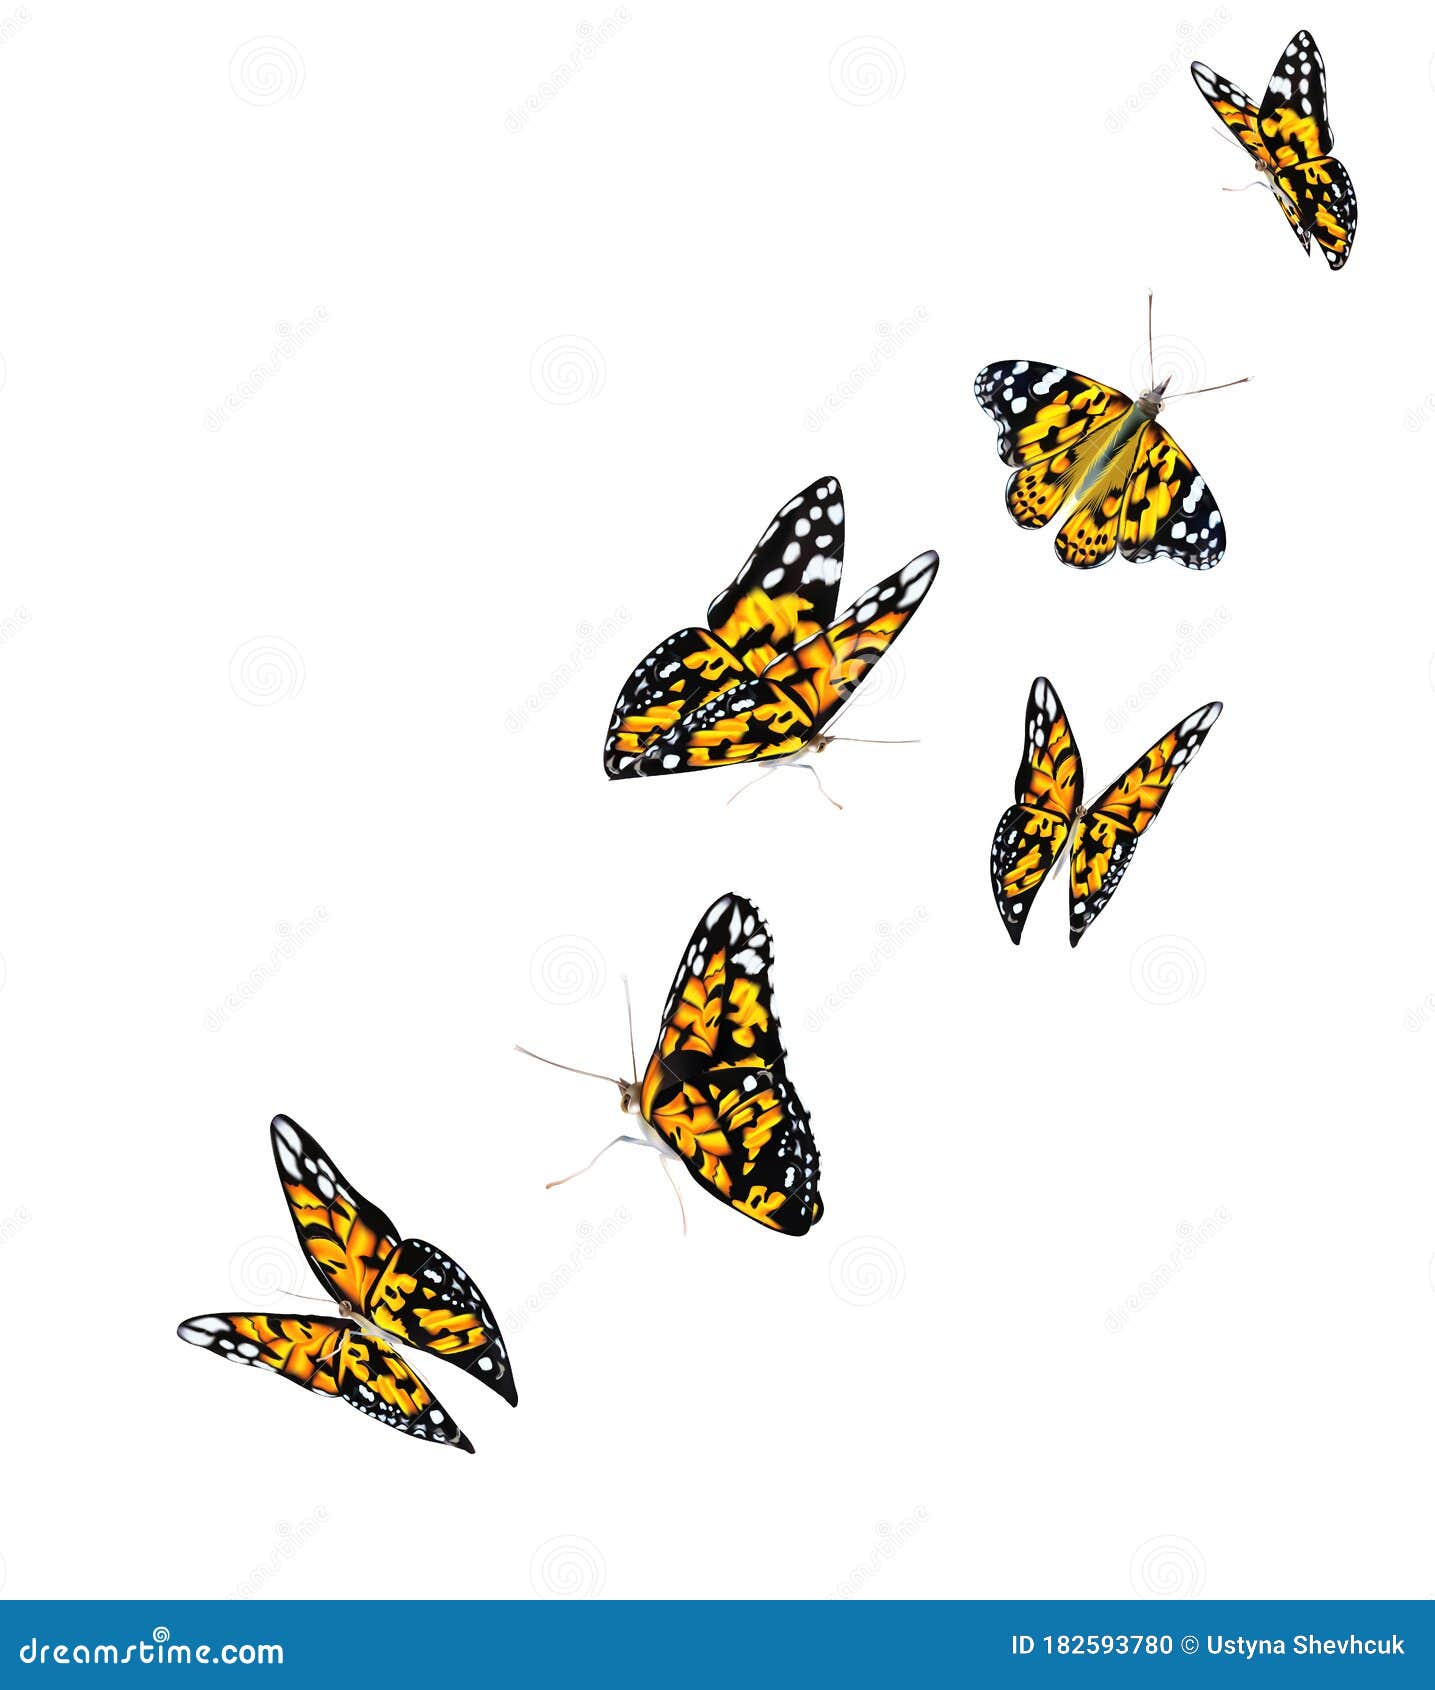 https://thumbs.dreamstime.com/z/orange-sch%C3%B6ne-fliegende-schmetterlinge-isoliert-auf-transparente-hintergrund-monarchfalter-motion-d-illustration-182593780.jpg